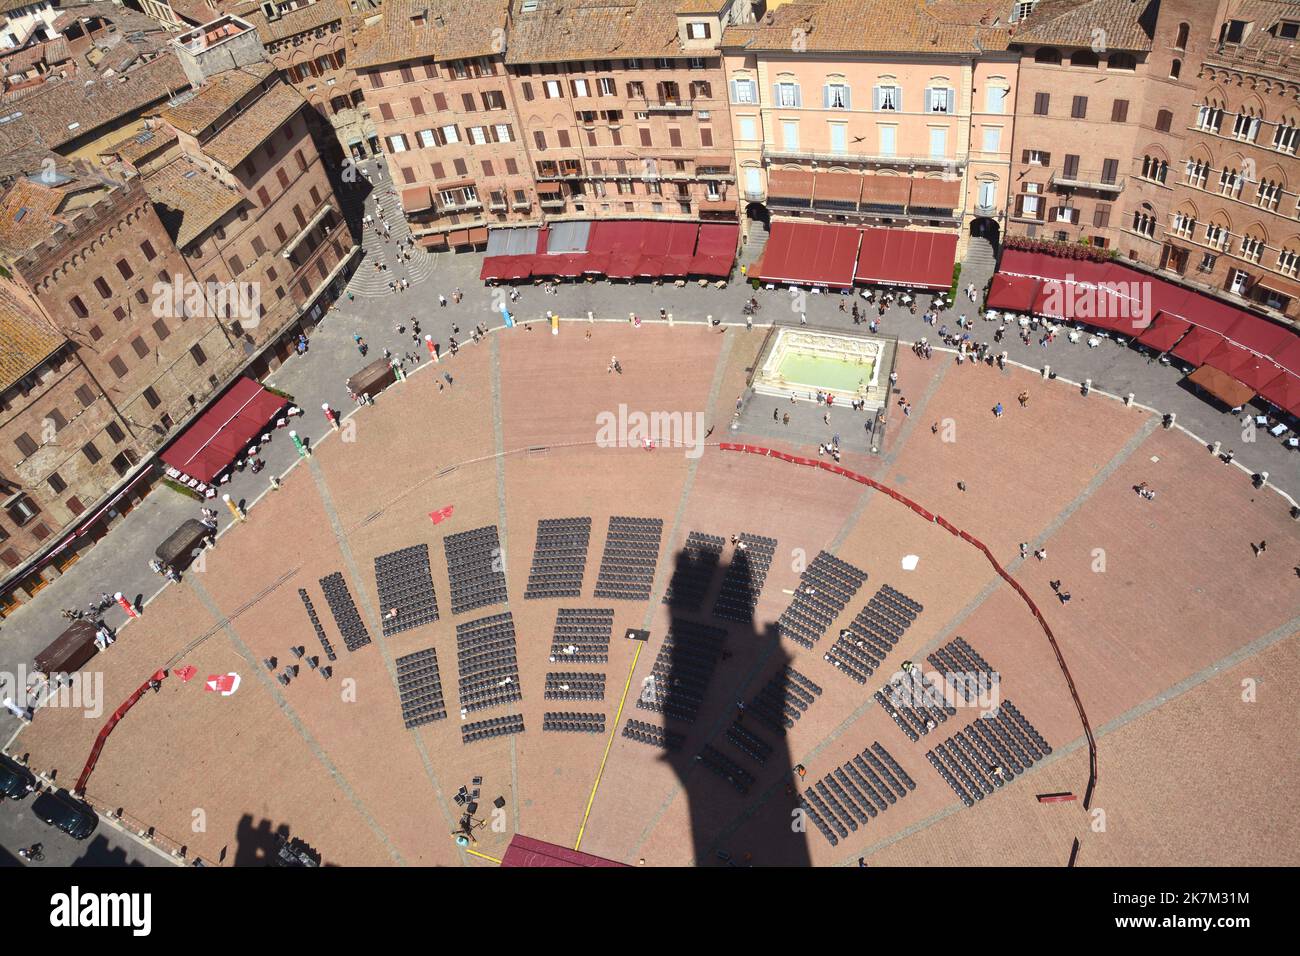 Piazza del Campo est la place en forme de coquille où se déroule le Palio di Siena. Le Palazzo Pubblico et la Torre del Mangia dominent la place Banque D'Images